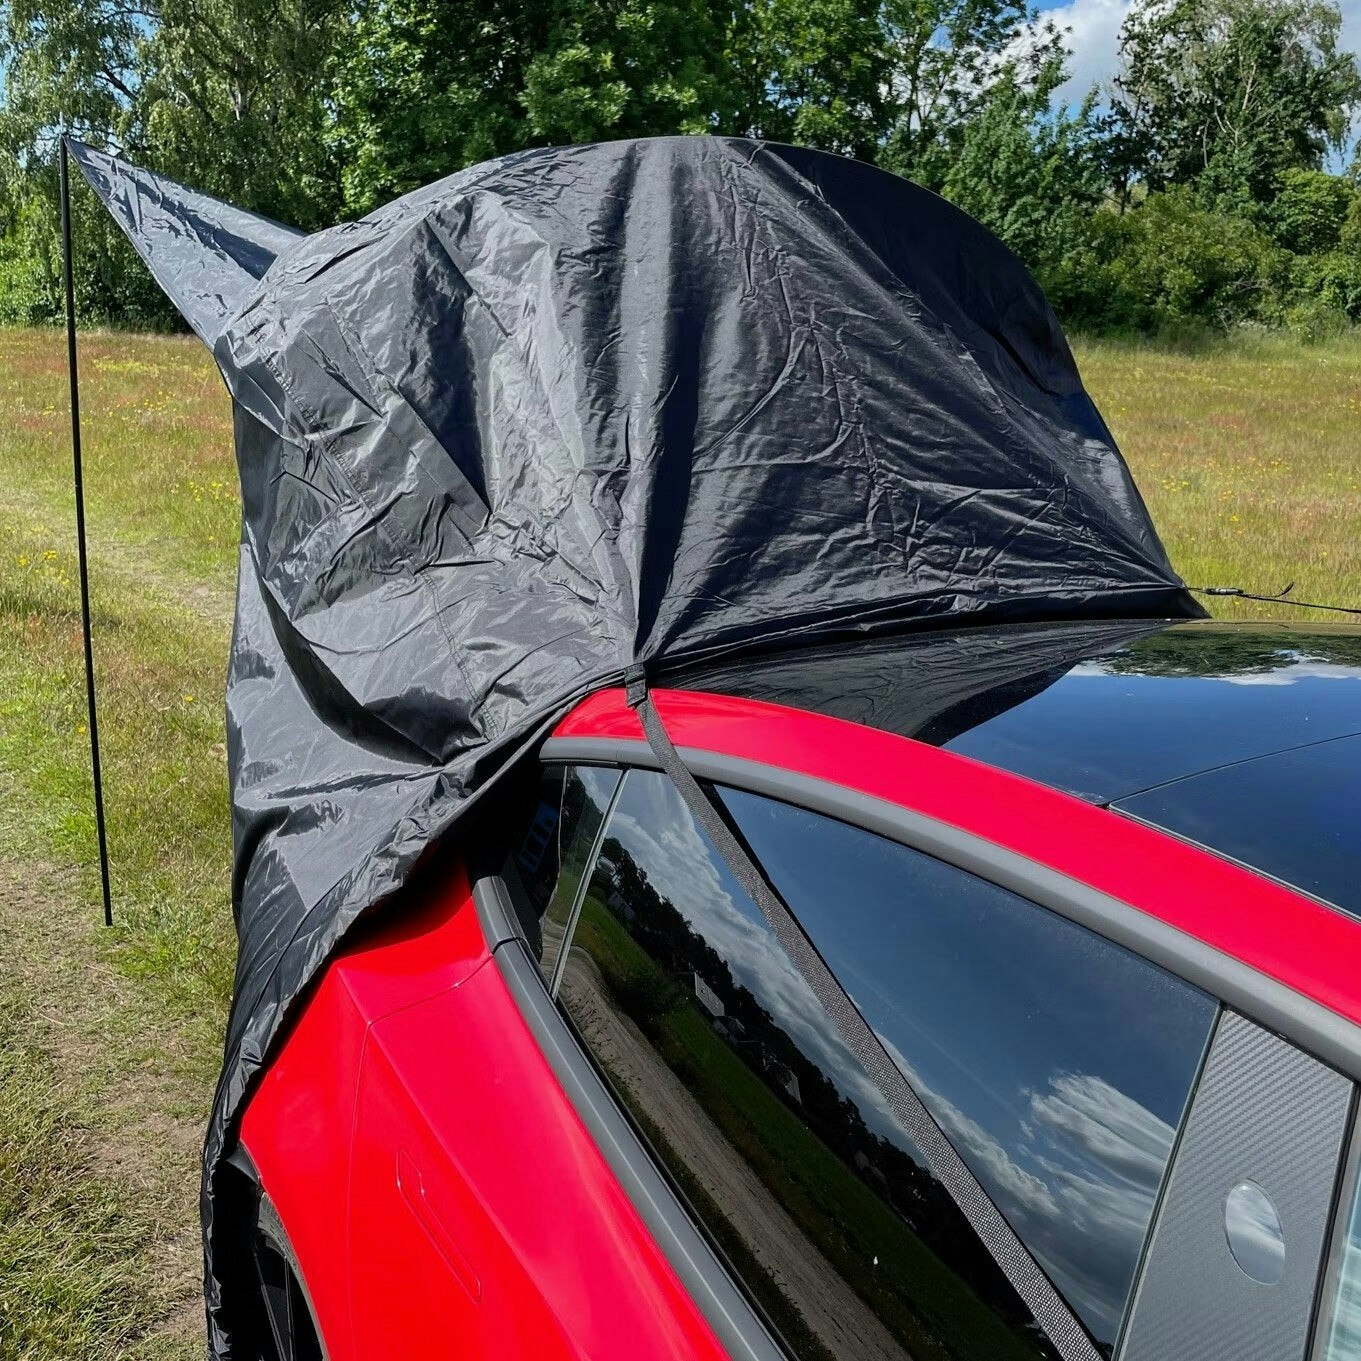 Nukkuma teltta - Tesla Model 3